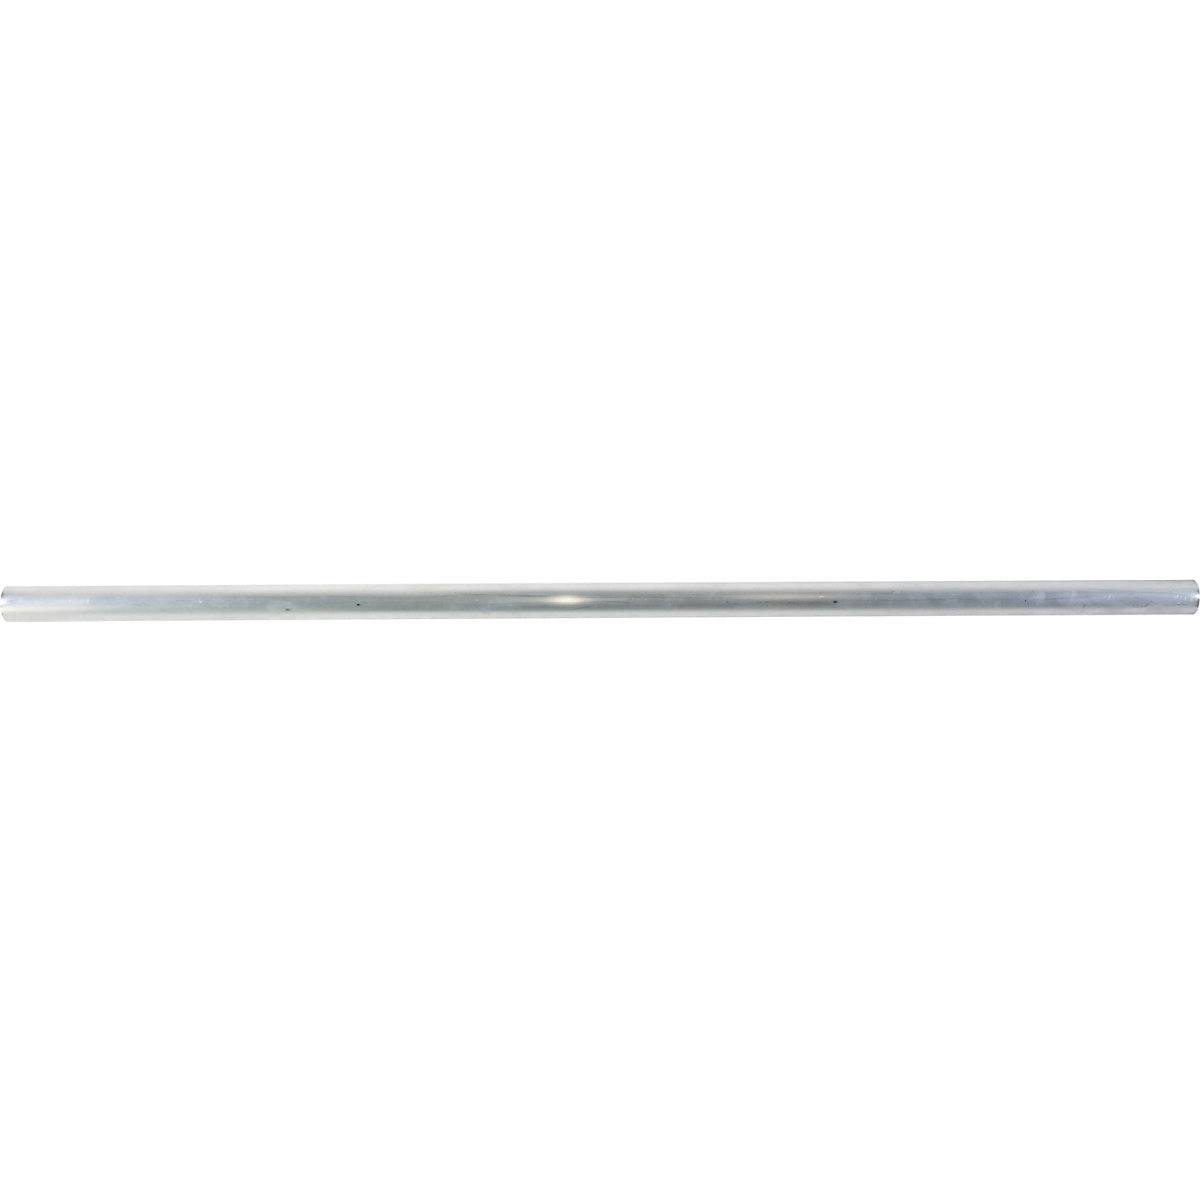 Sustav vodilica od okruglih cijevi – KRAUSE, dužina 3000 mm, eloksirani aluminij